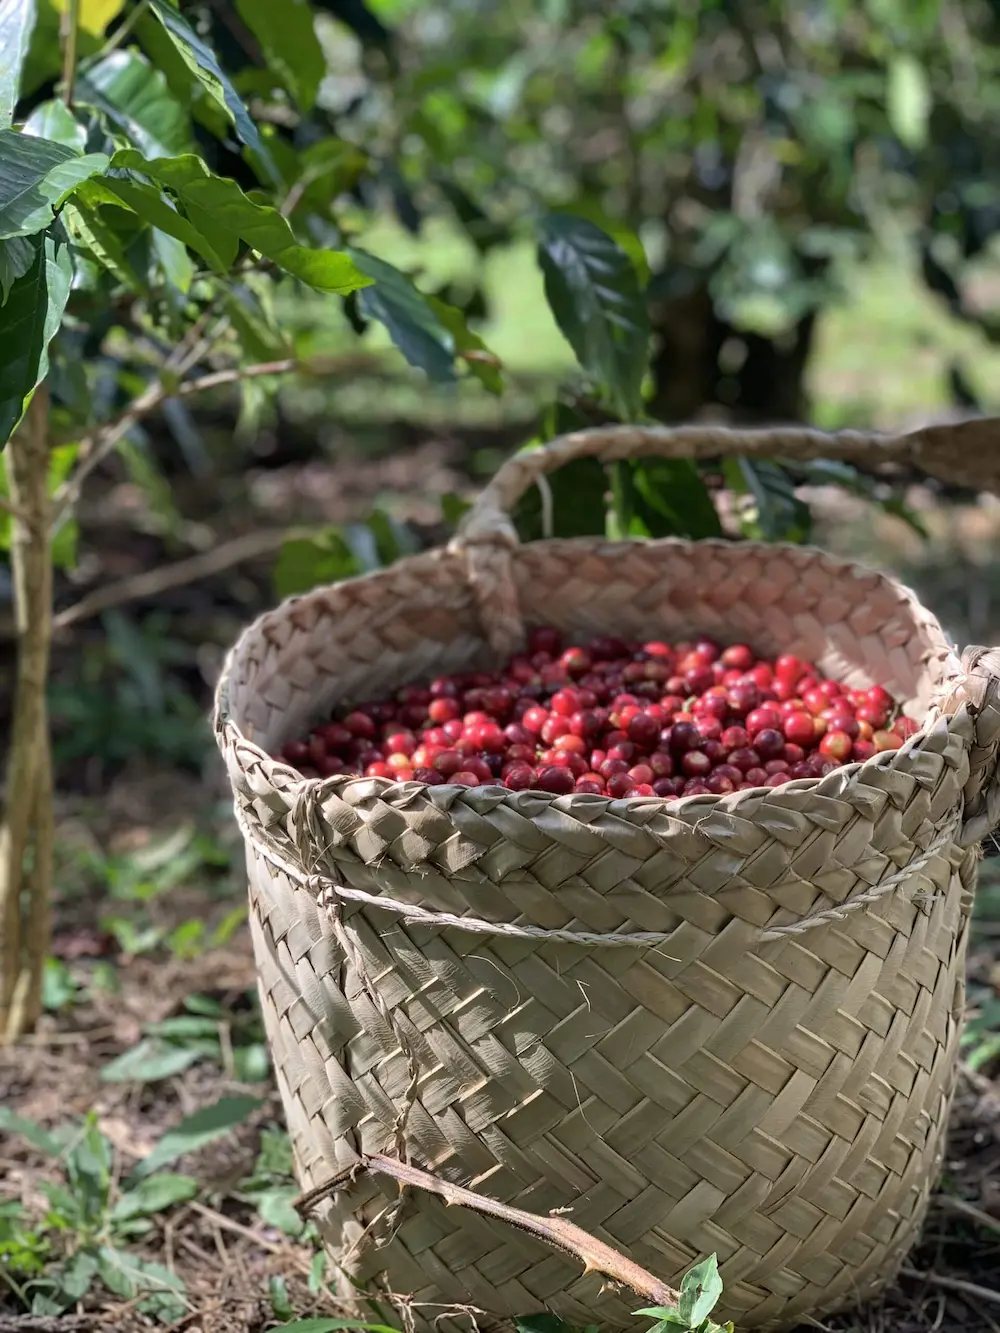 Full basket of harvested cherries in basket in Ermera Timor-Leste